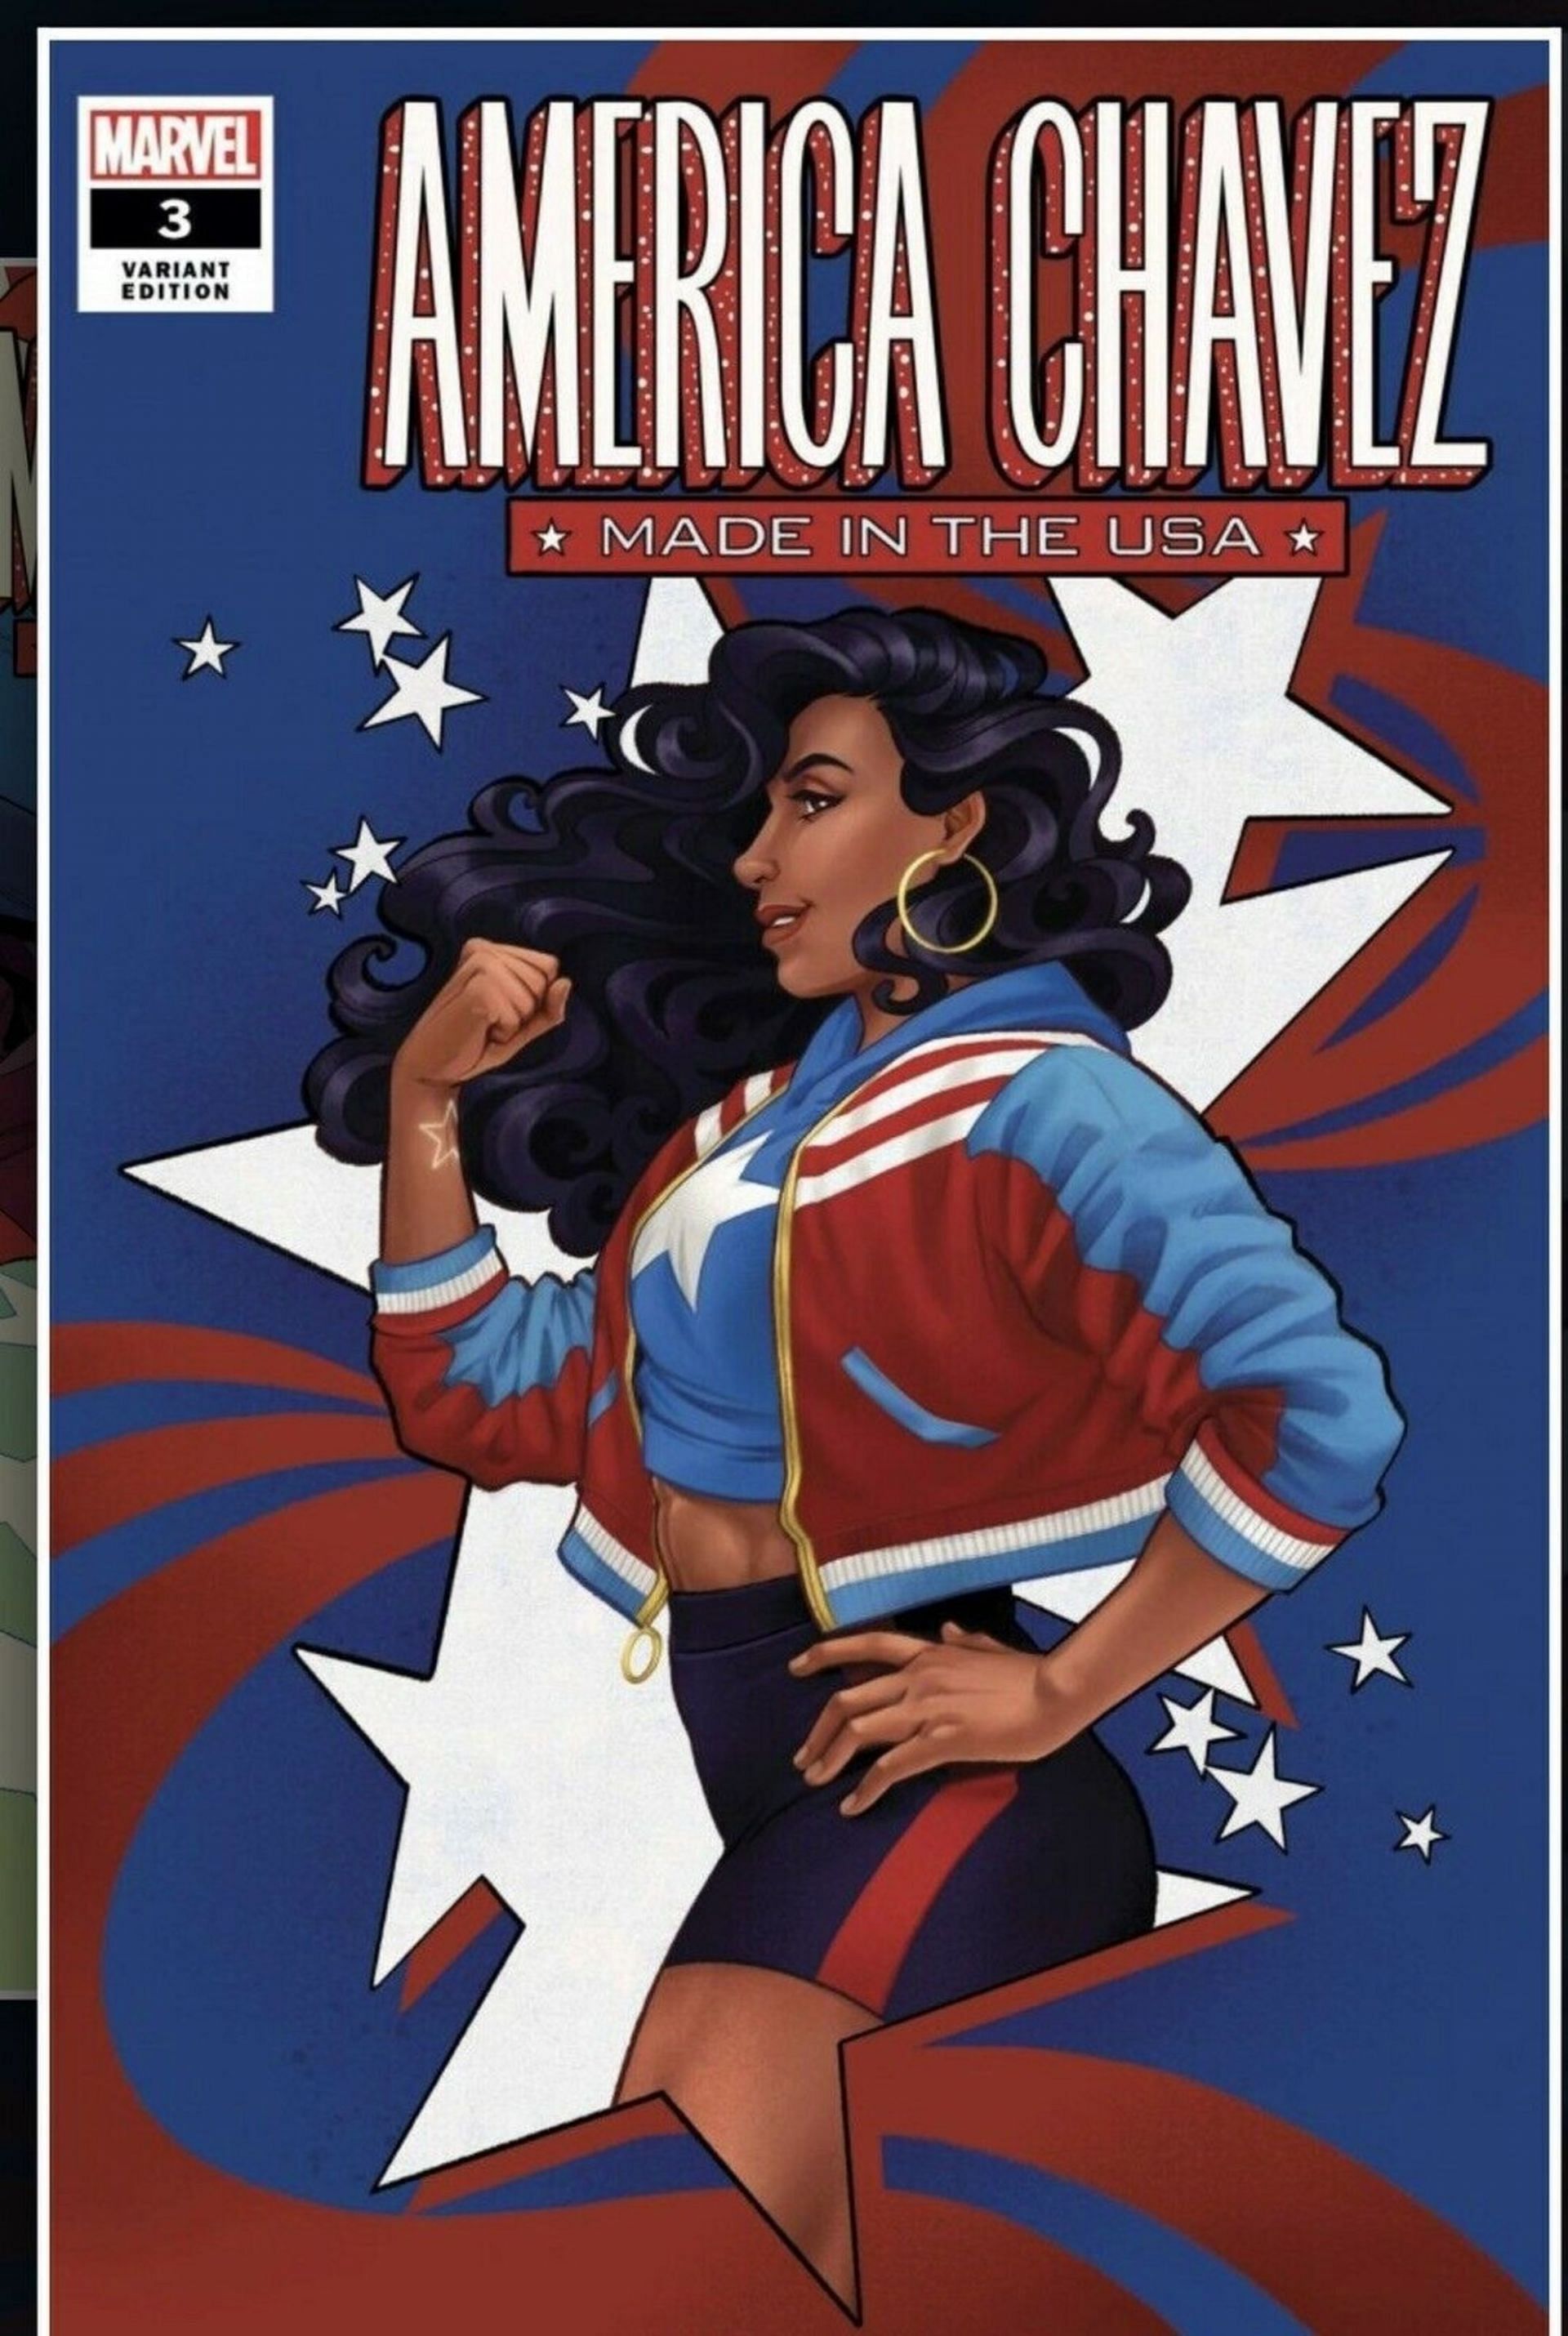 America Chavez in the comics (Image via Marvel Comics)